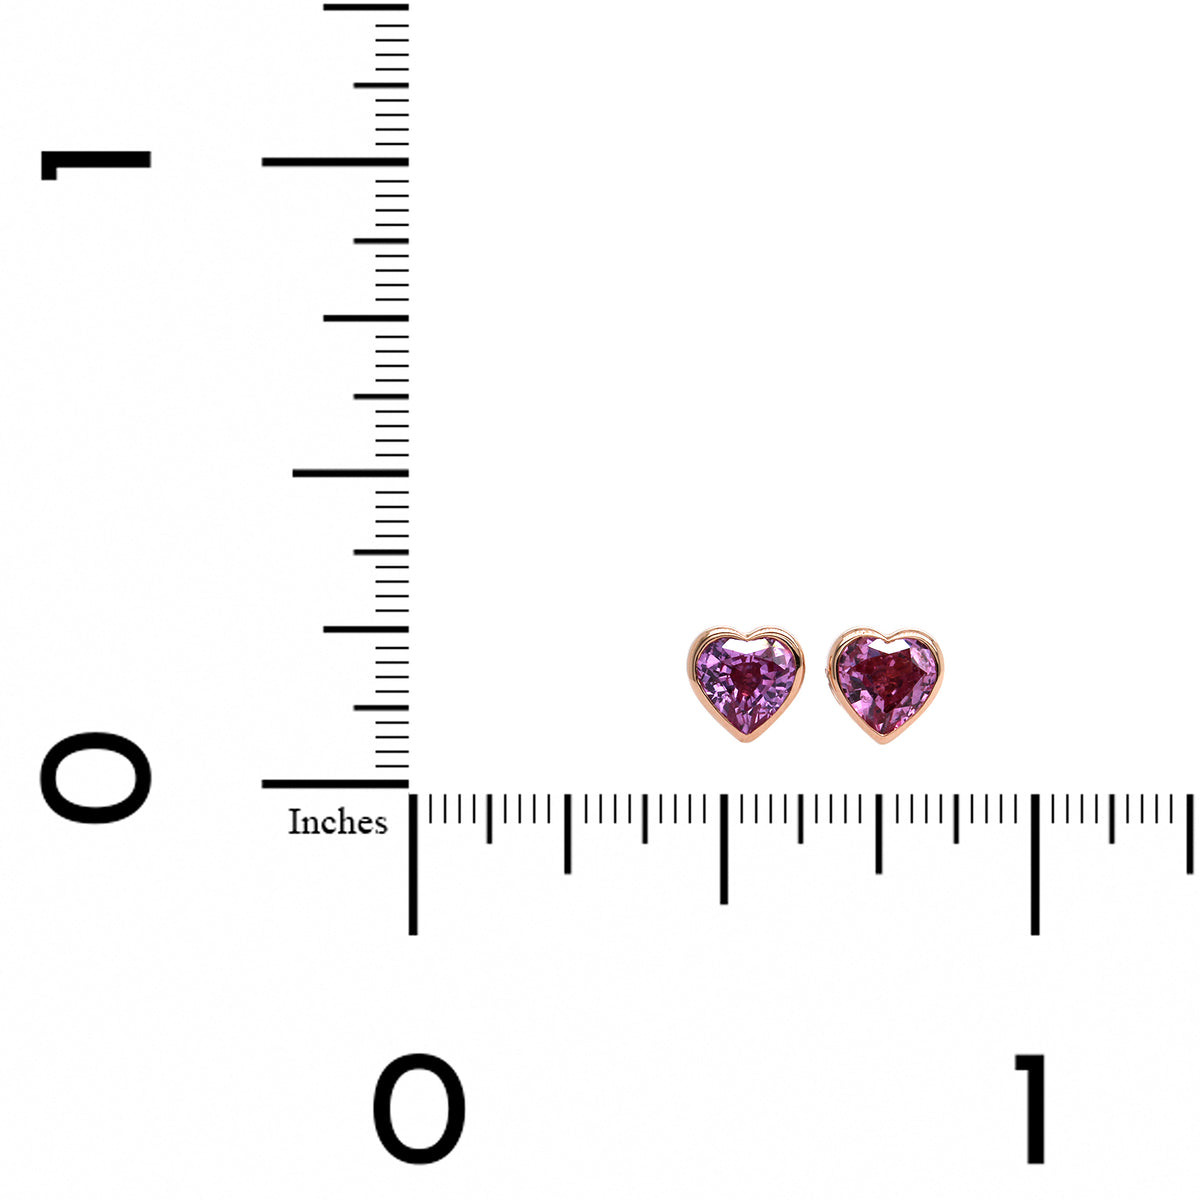 18K Rose Gold Heart Shape Pink Sapphire Stud Earrings